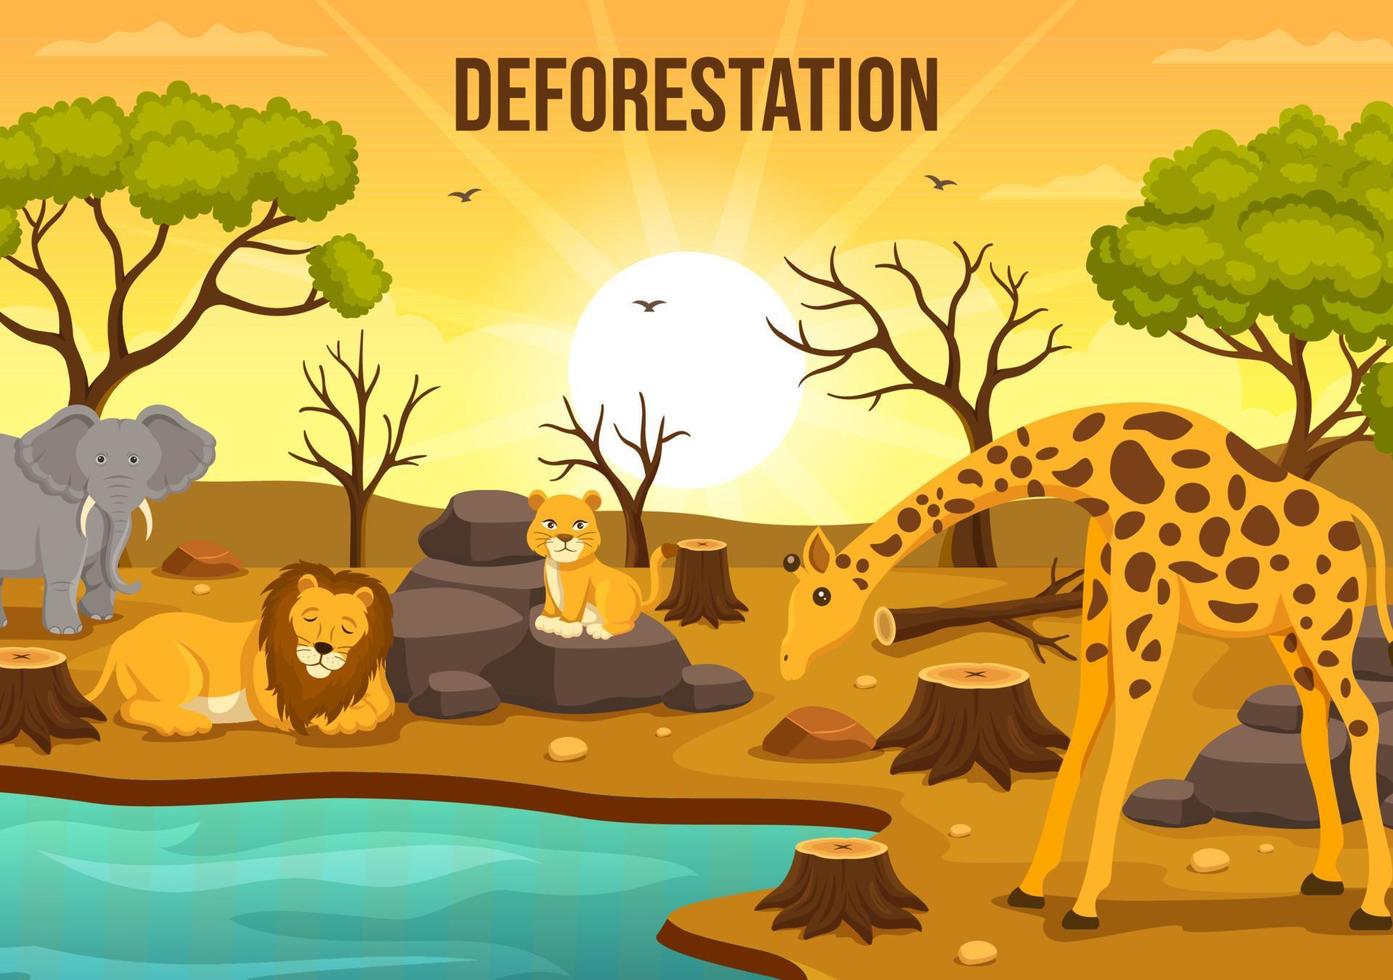 avskogning illustration med träd i de fällda skog och brinnande in i förorening orsakar de utdöende av djur i tecknad serie hand dragen mallar vektor